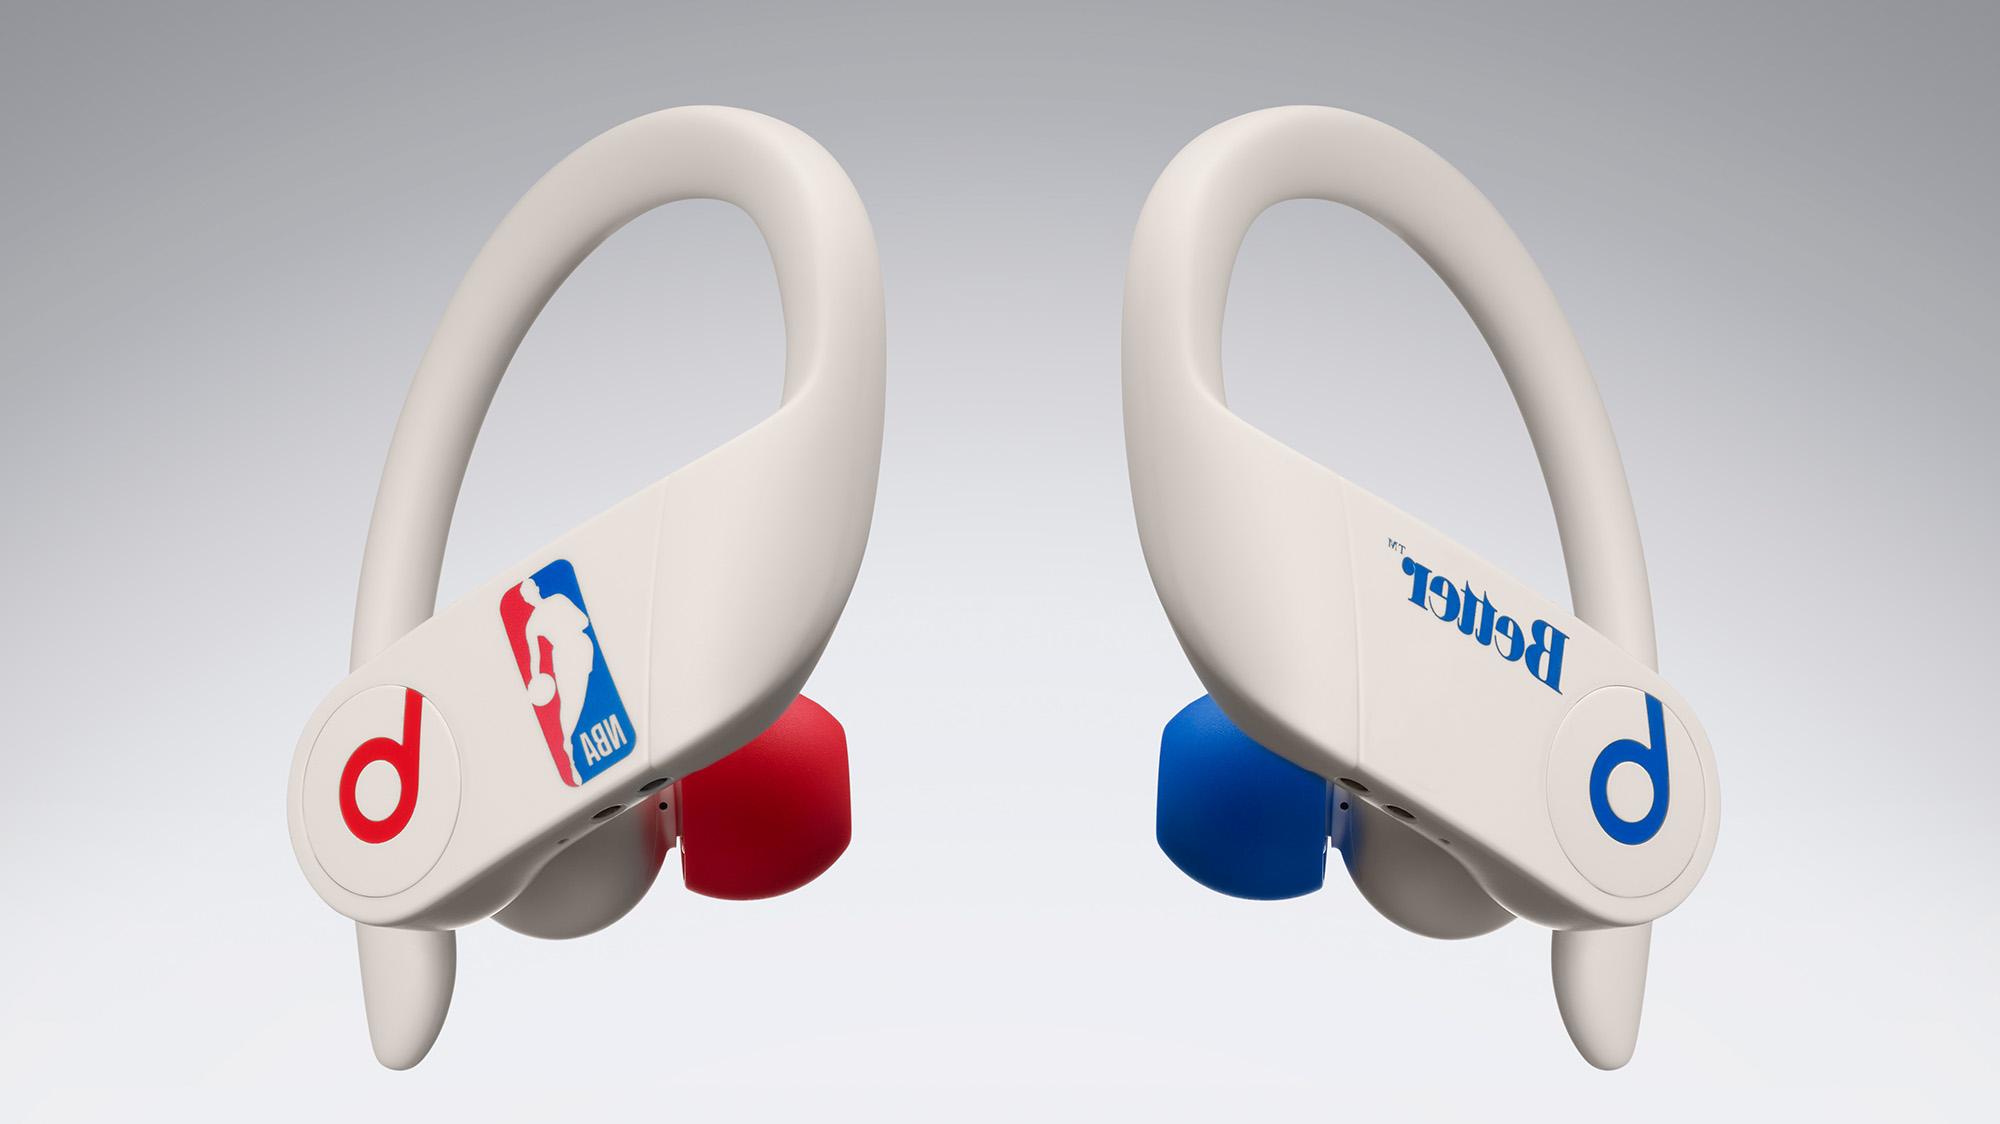 Dla fanów NBA: Apple wprowadził specjalną wersję Powerbeats Pro